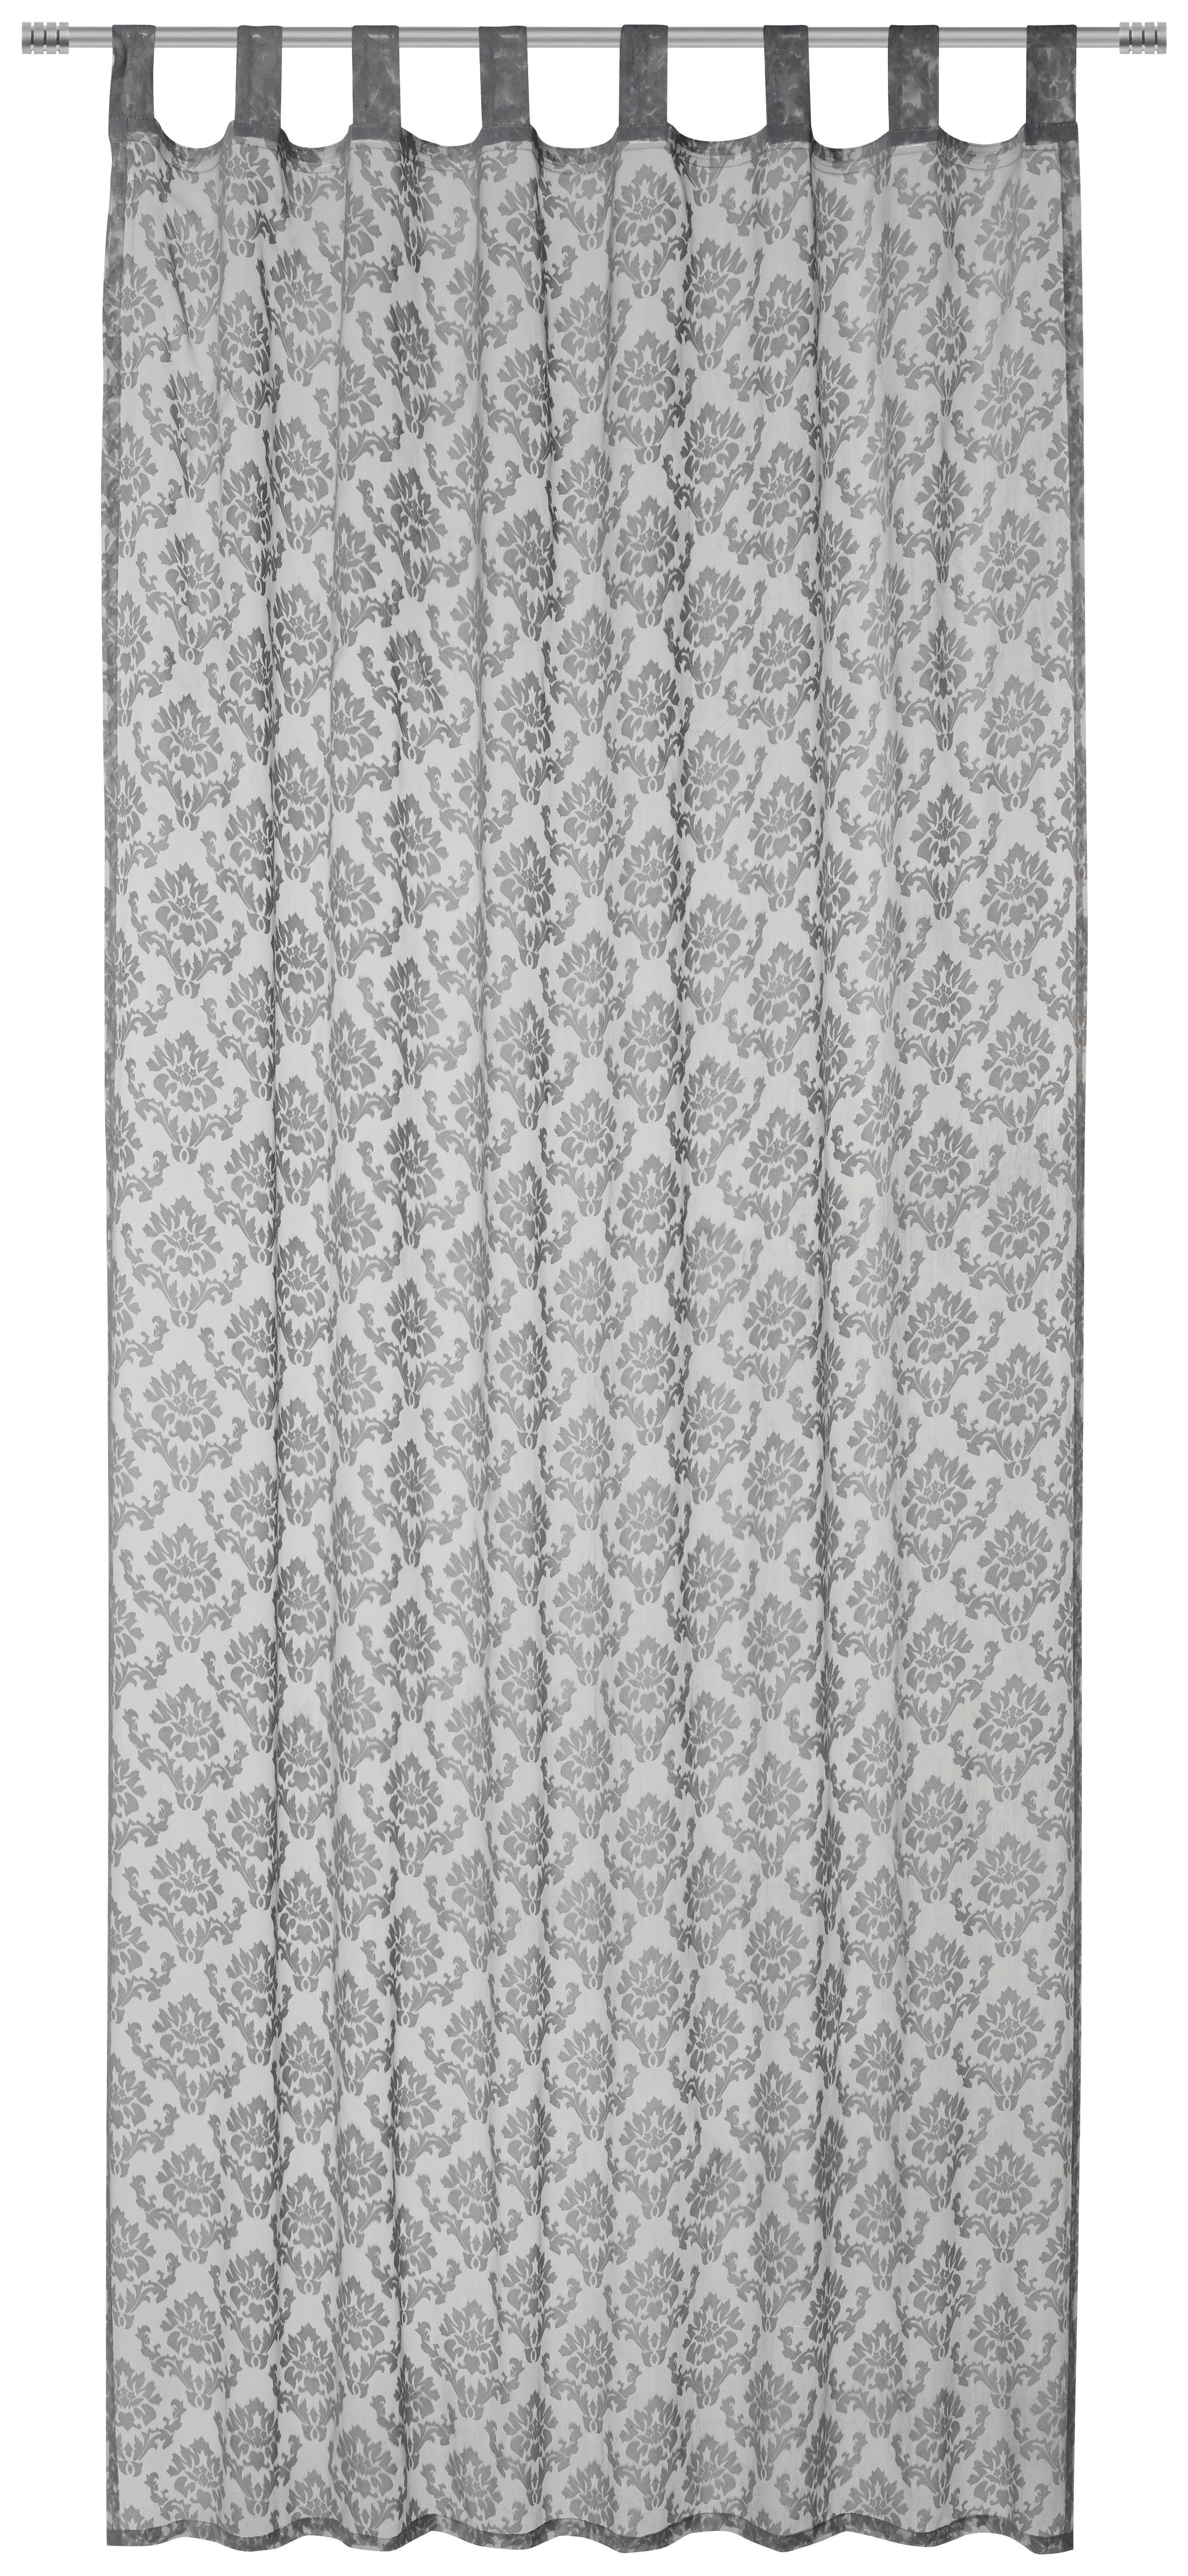 Készfüggöny Harry 140/245 - Szürke/Fehér, konvencionális, Textil (140/245cm) - Modern Living